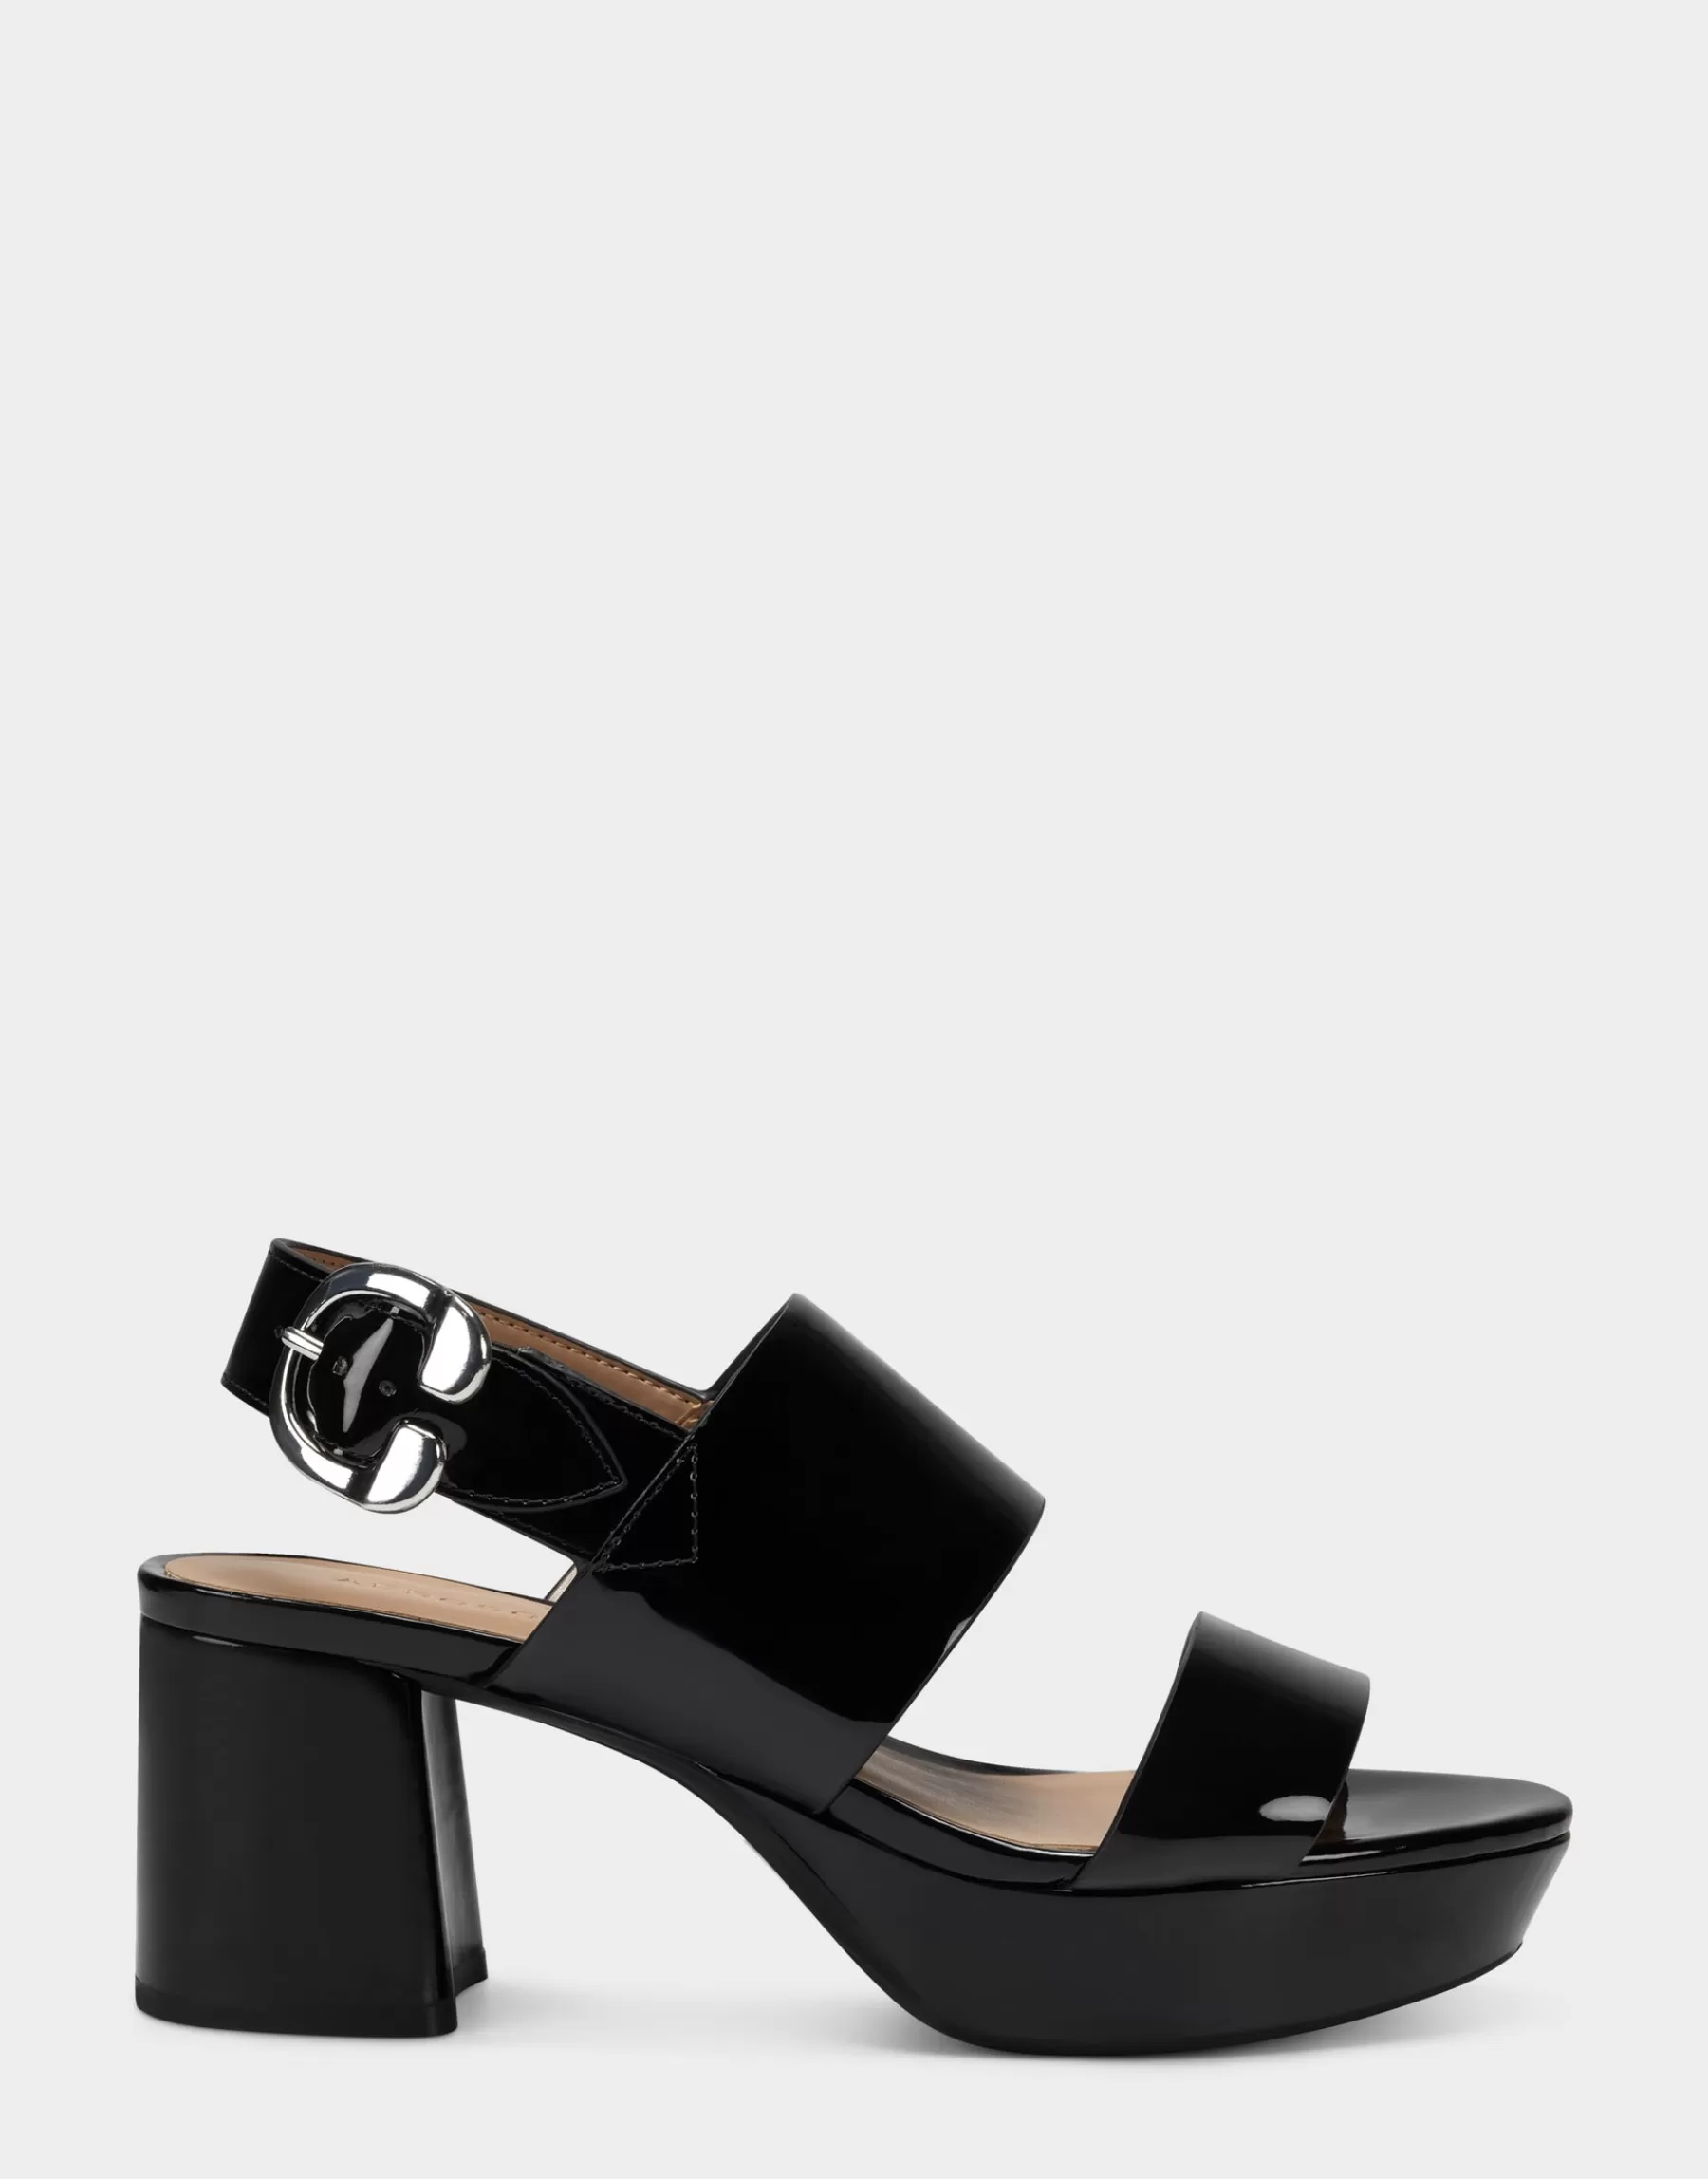 Aerosoles Comfortable Women's Platform Sandal in Faux Leather Black Patent Cheap